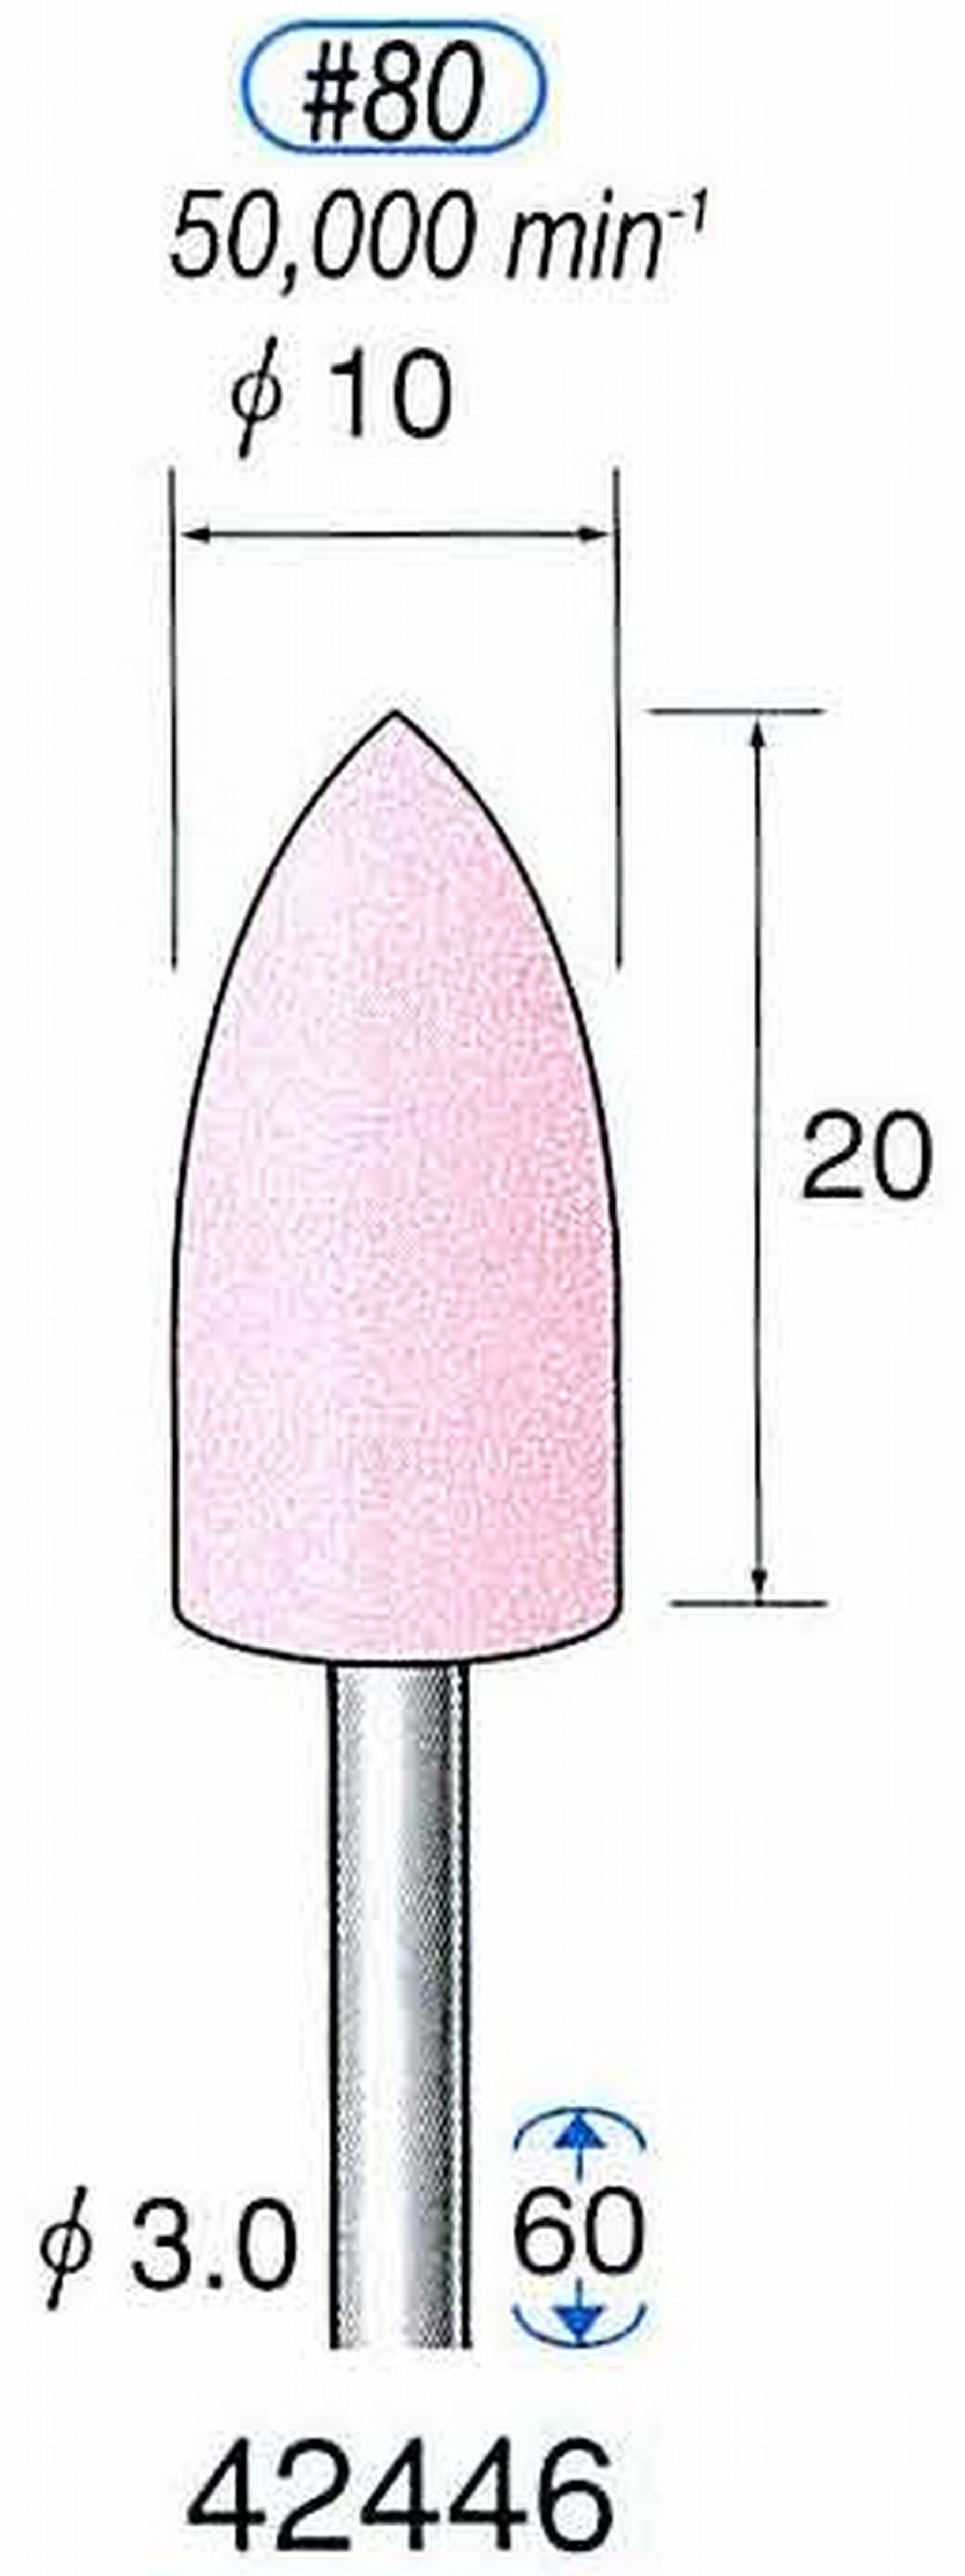 ナカニシ/NAKANISHI 軸付砥石(WA砥粒) 一般研削用 軸径(シャンク) φ3.0mm 42446